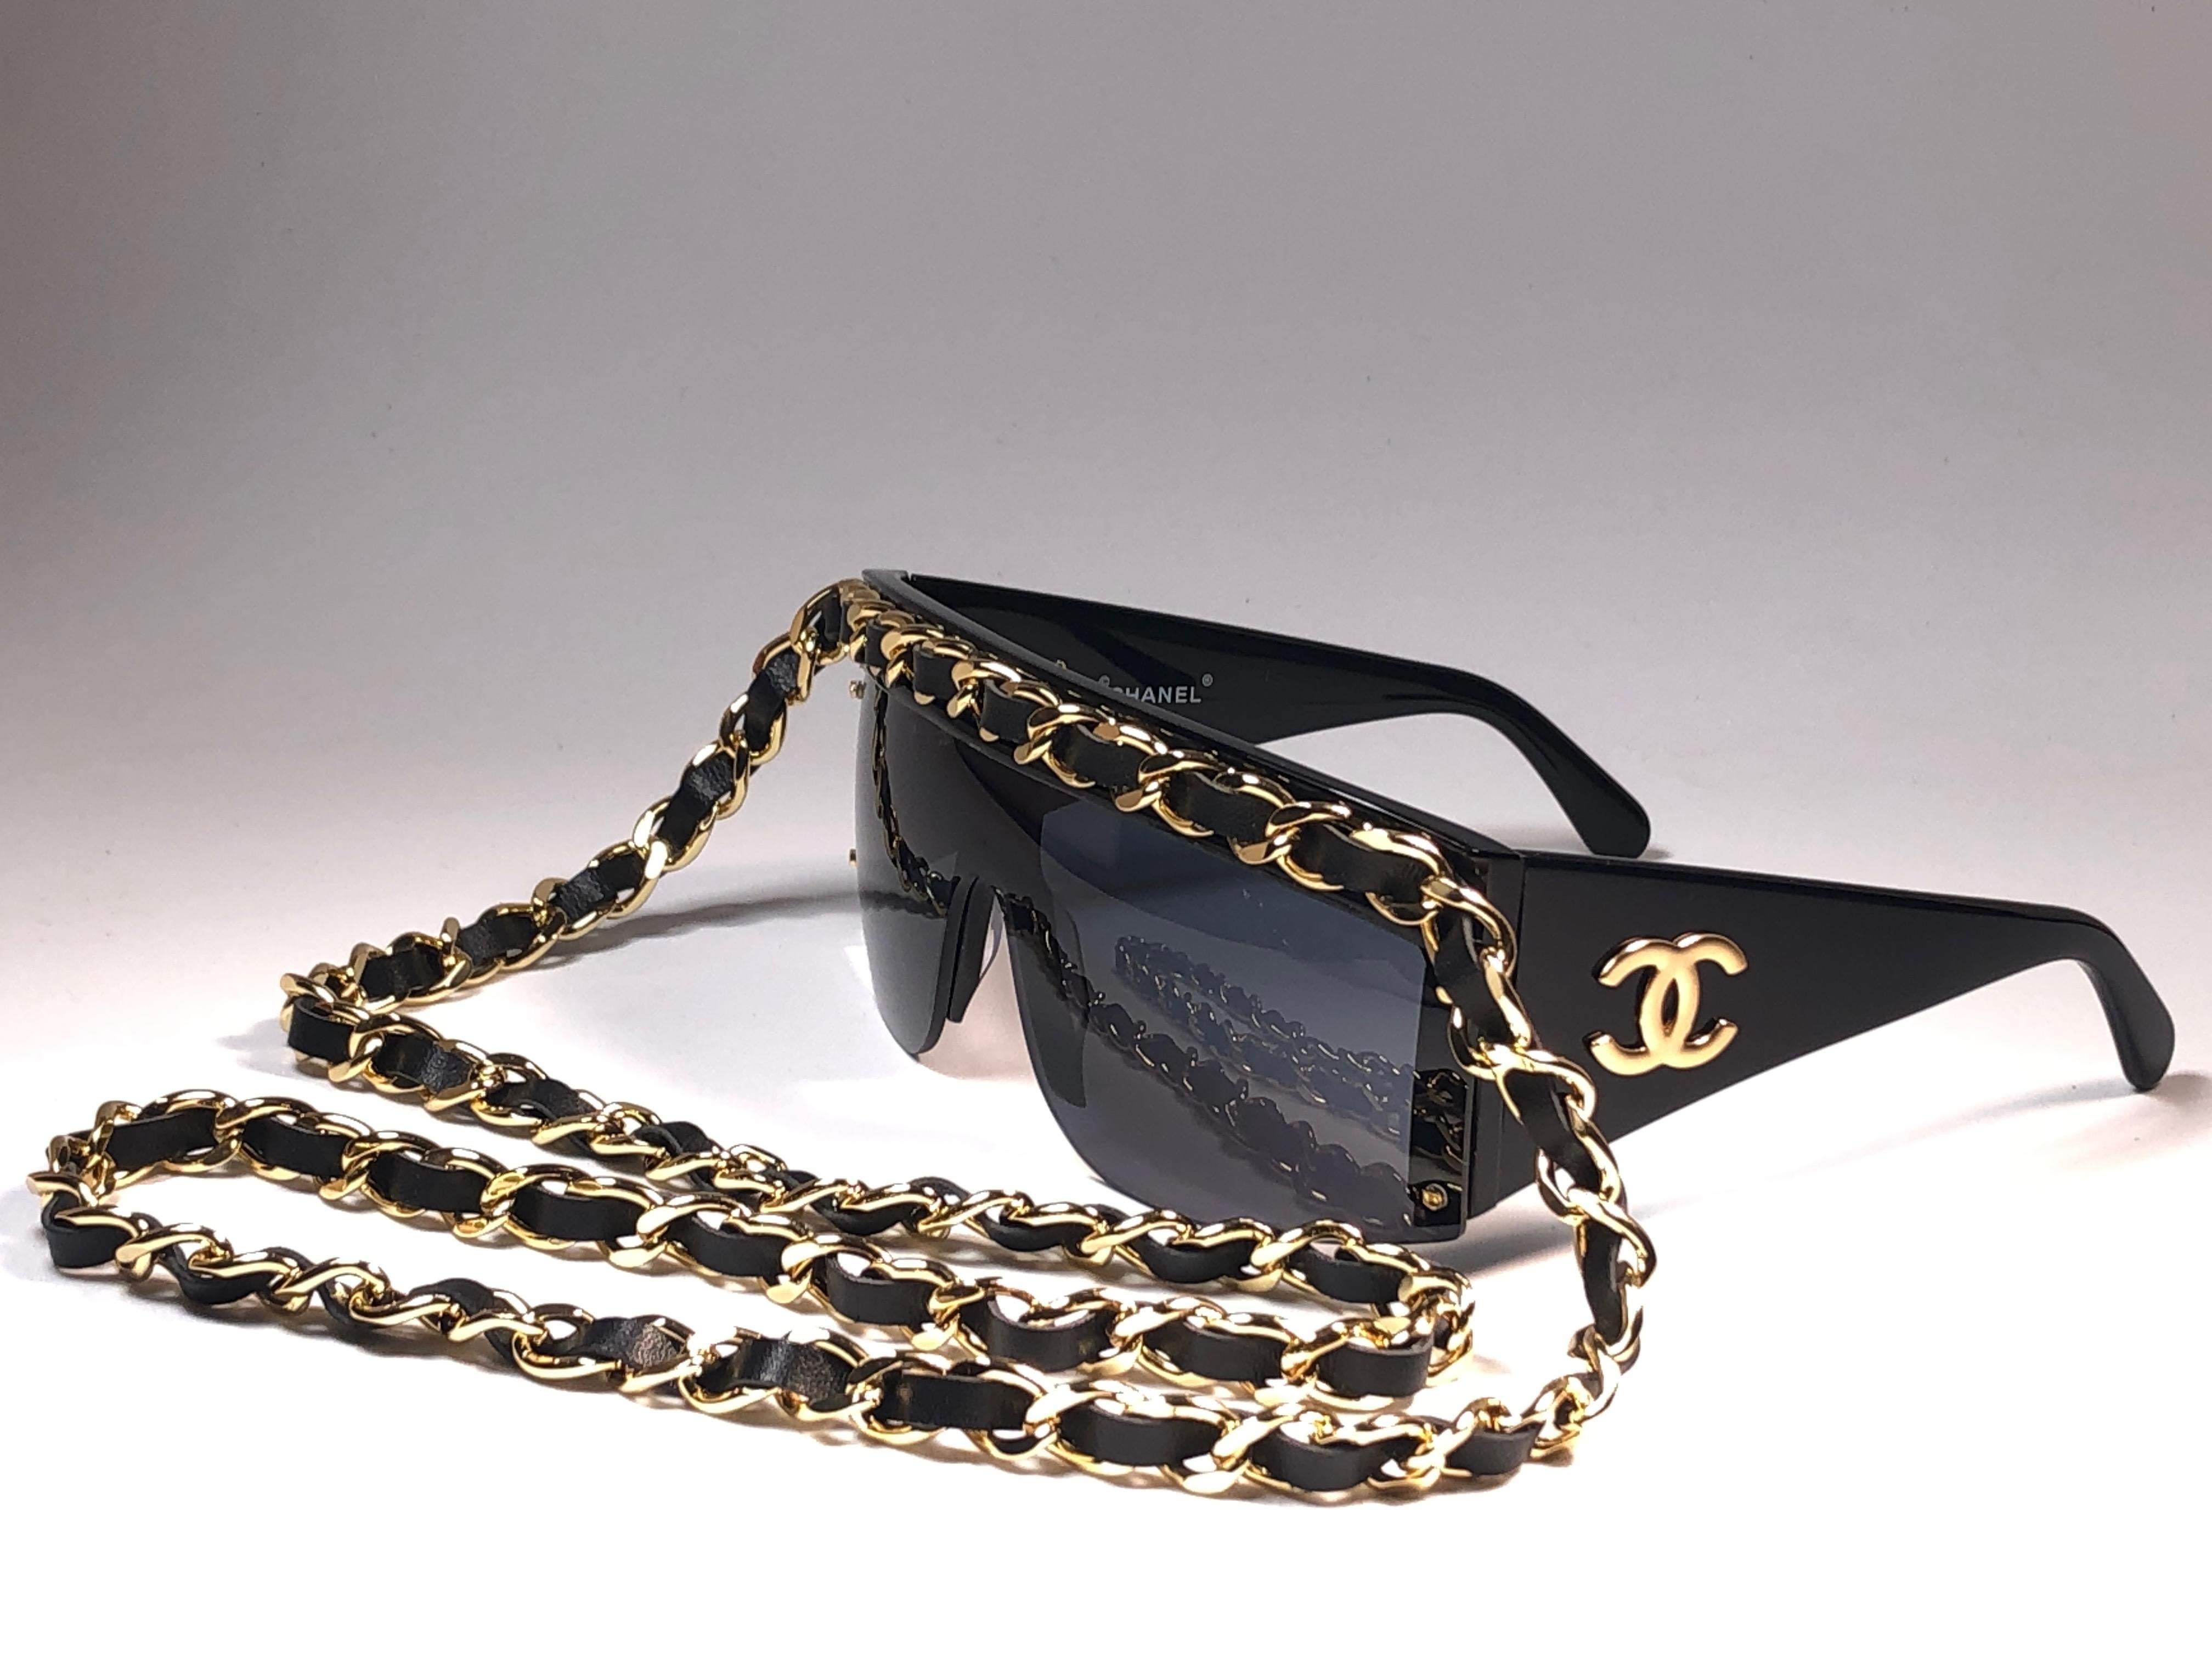 New Rare Vintage Chanel gold hardware sunglasses for the Fall Winter collection 1992.

Une pièce rare et unique dans cet état neuf, jamais exposée ou portée. Cet article peut présenter des signes d'usure mineurs dus au stockage.

Cette paire de